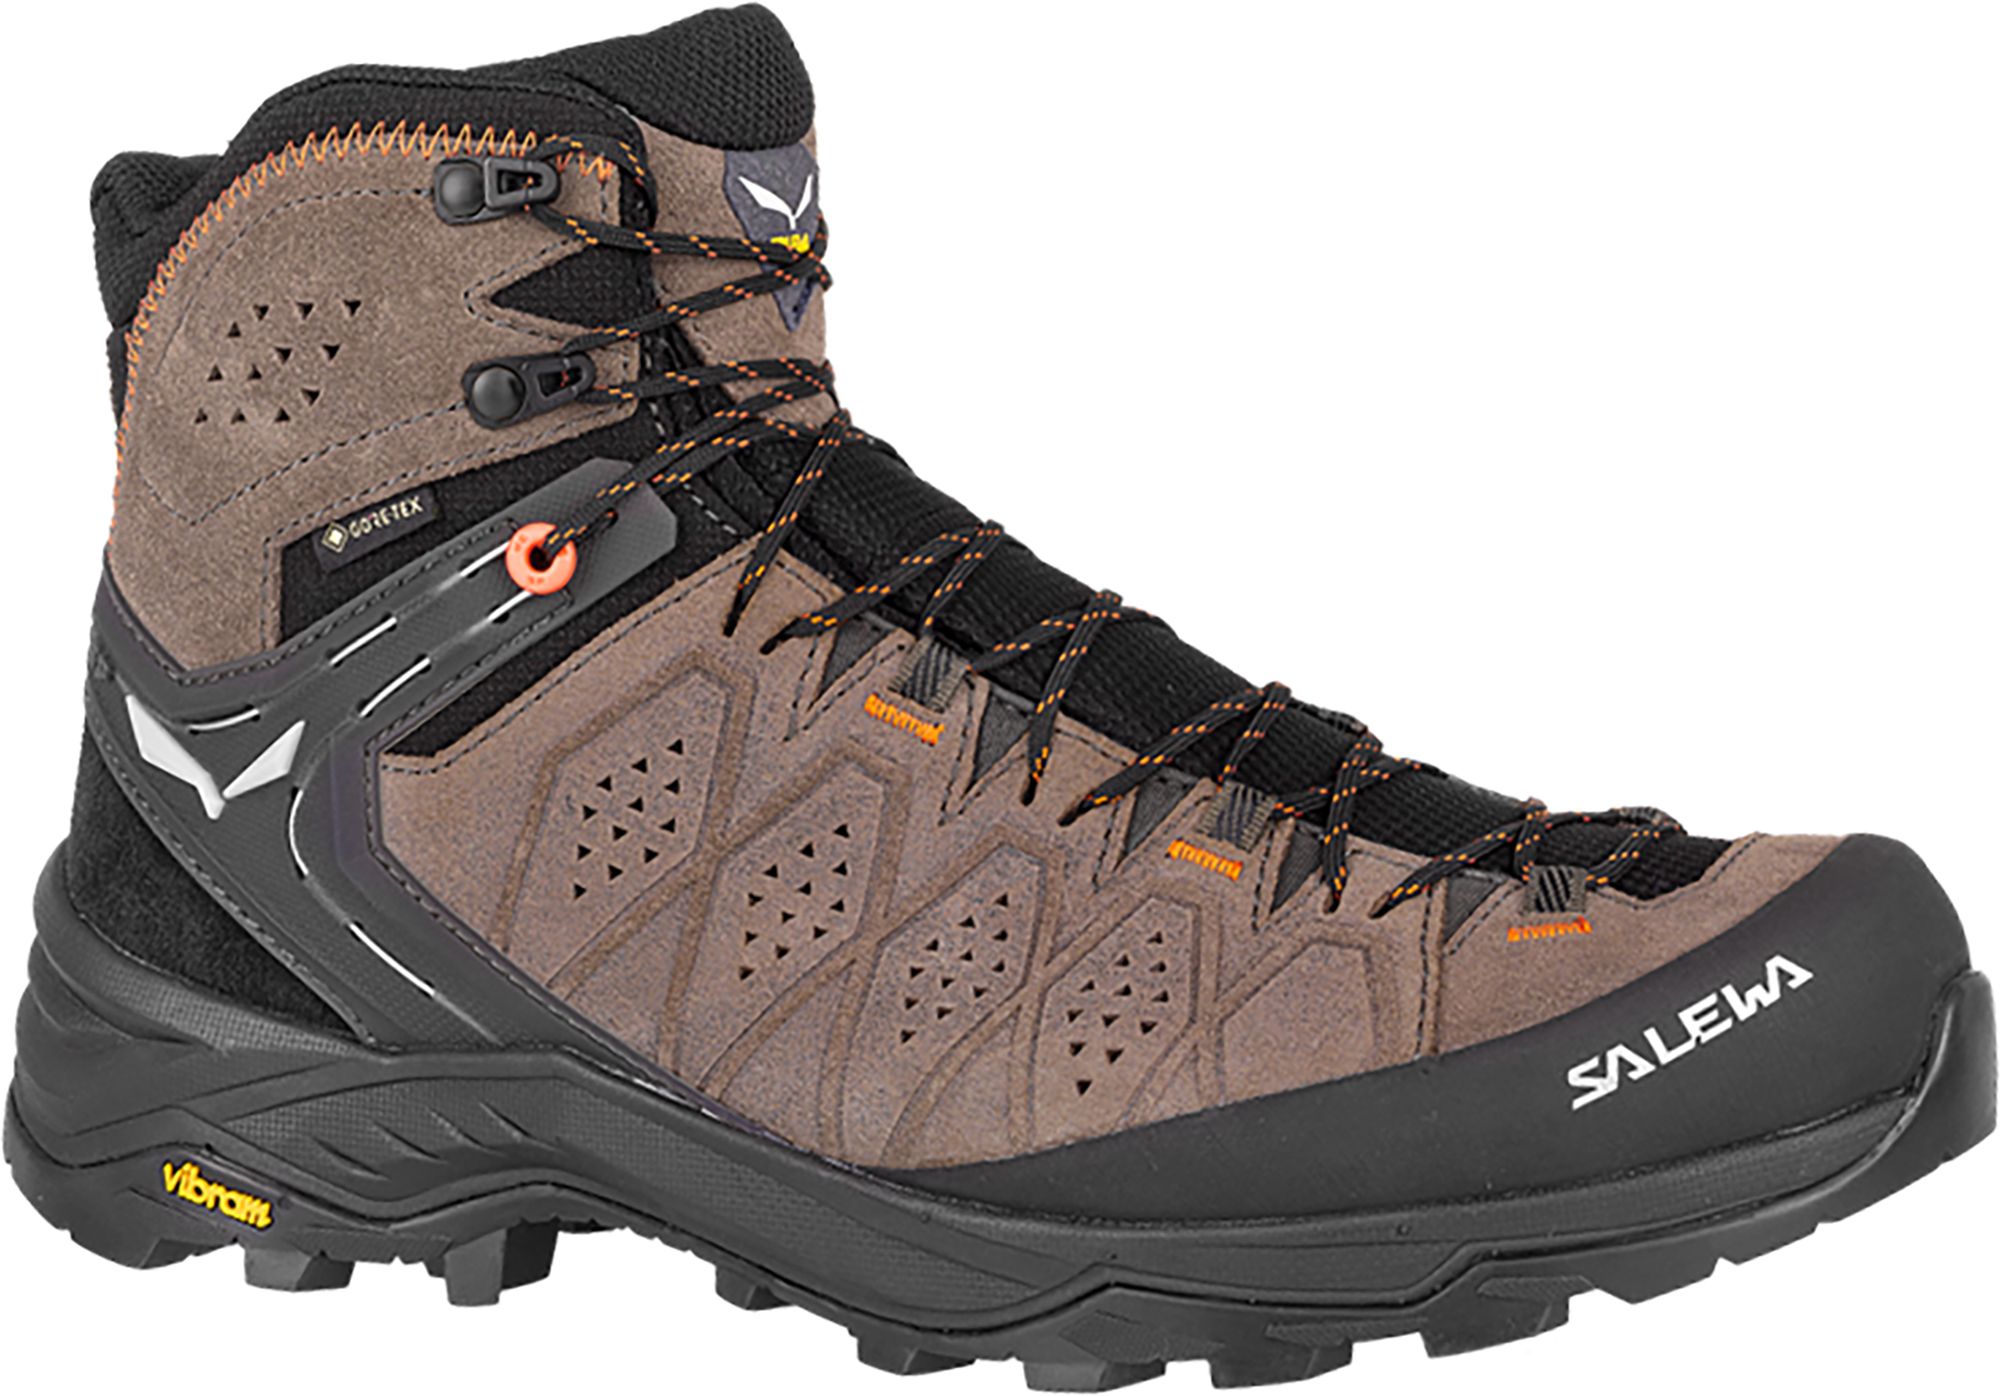 Photos - Trekking Shoes Salewa Men's Alp Trainer 2 GTX Hiking Boots, Size 10, Walnut 22IYPMMLPTRNR 